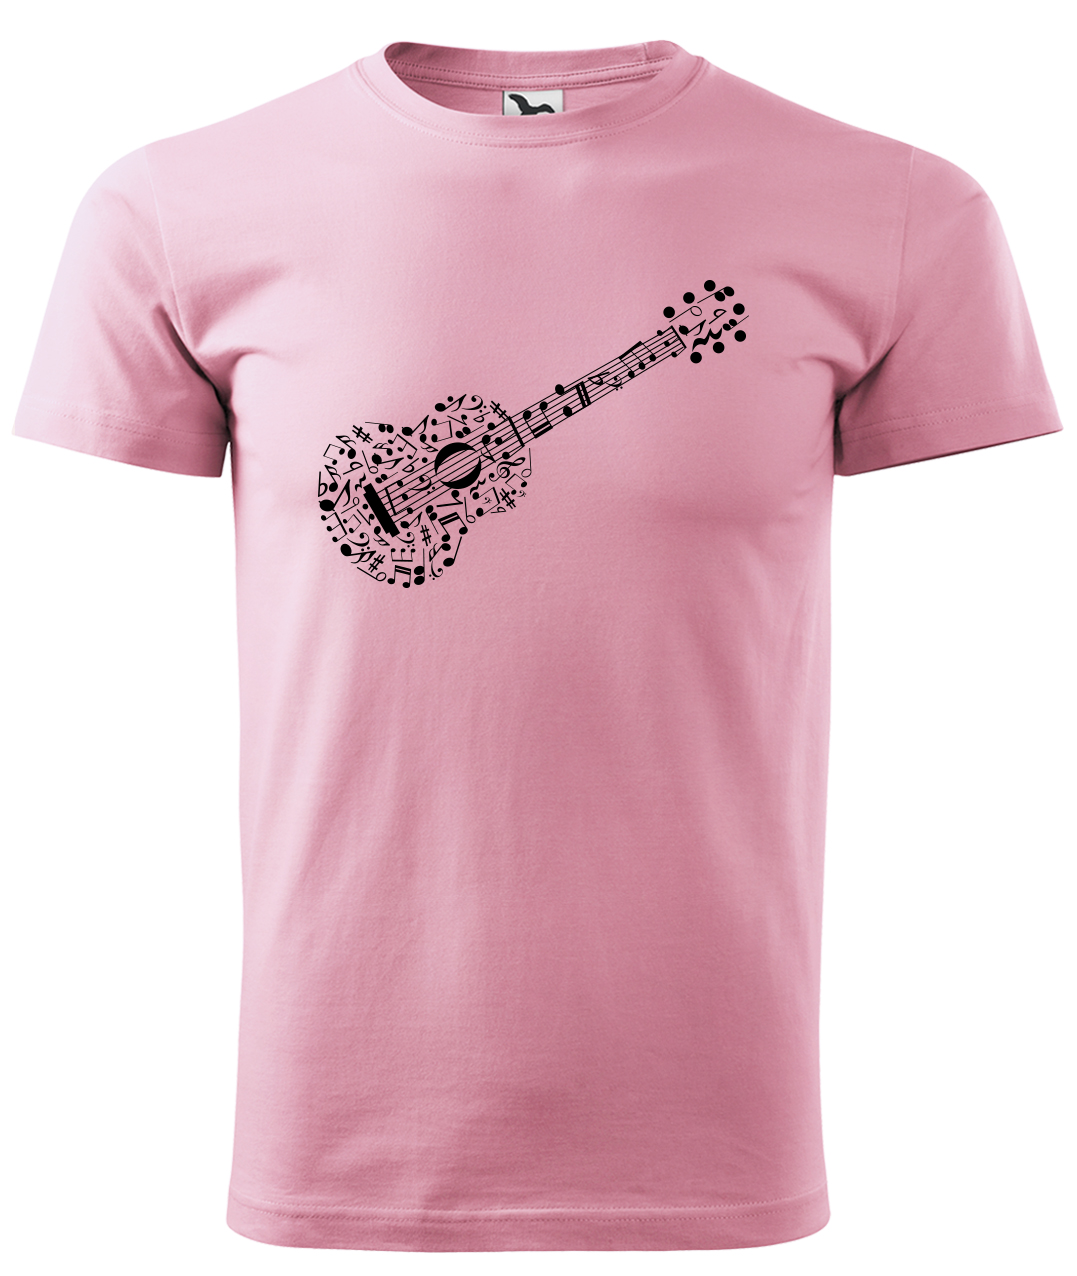 Dětské tričko s kytarou - Kytara z not Velikost: 6 let / 122 cm, Barva: Růžová (30), Délka rukávu: Krátký rukáv